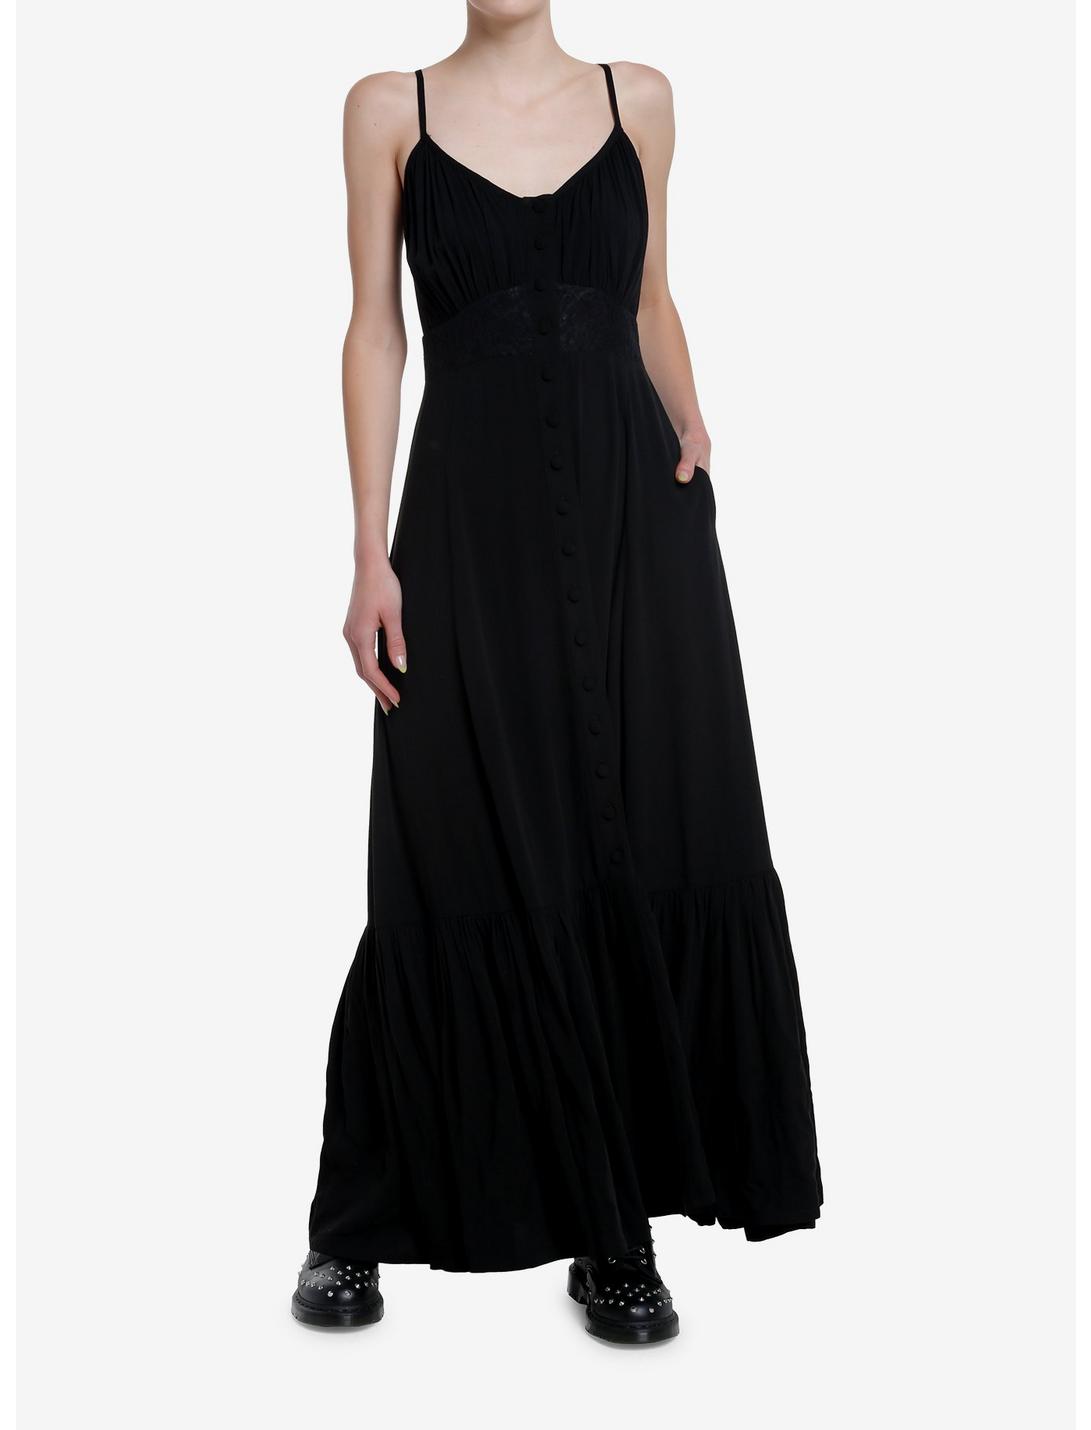 Cosmic Aura Black Lace Maxi Dress, BLACK, hi-res